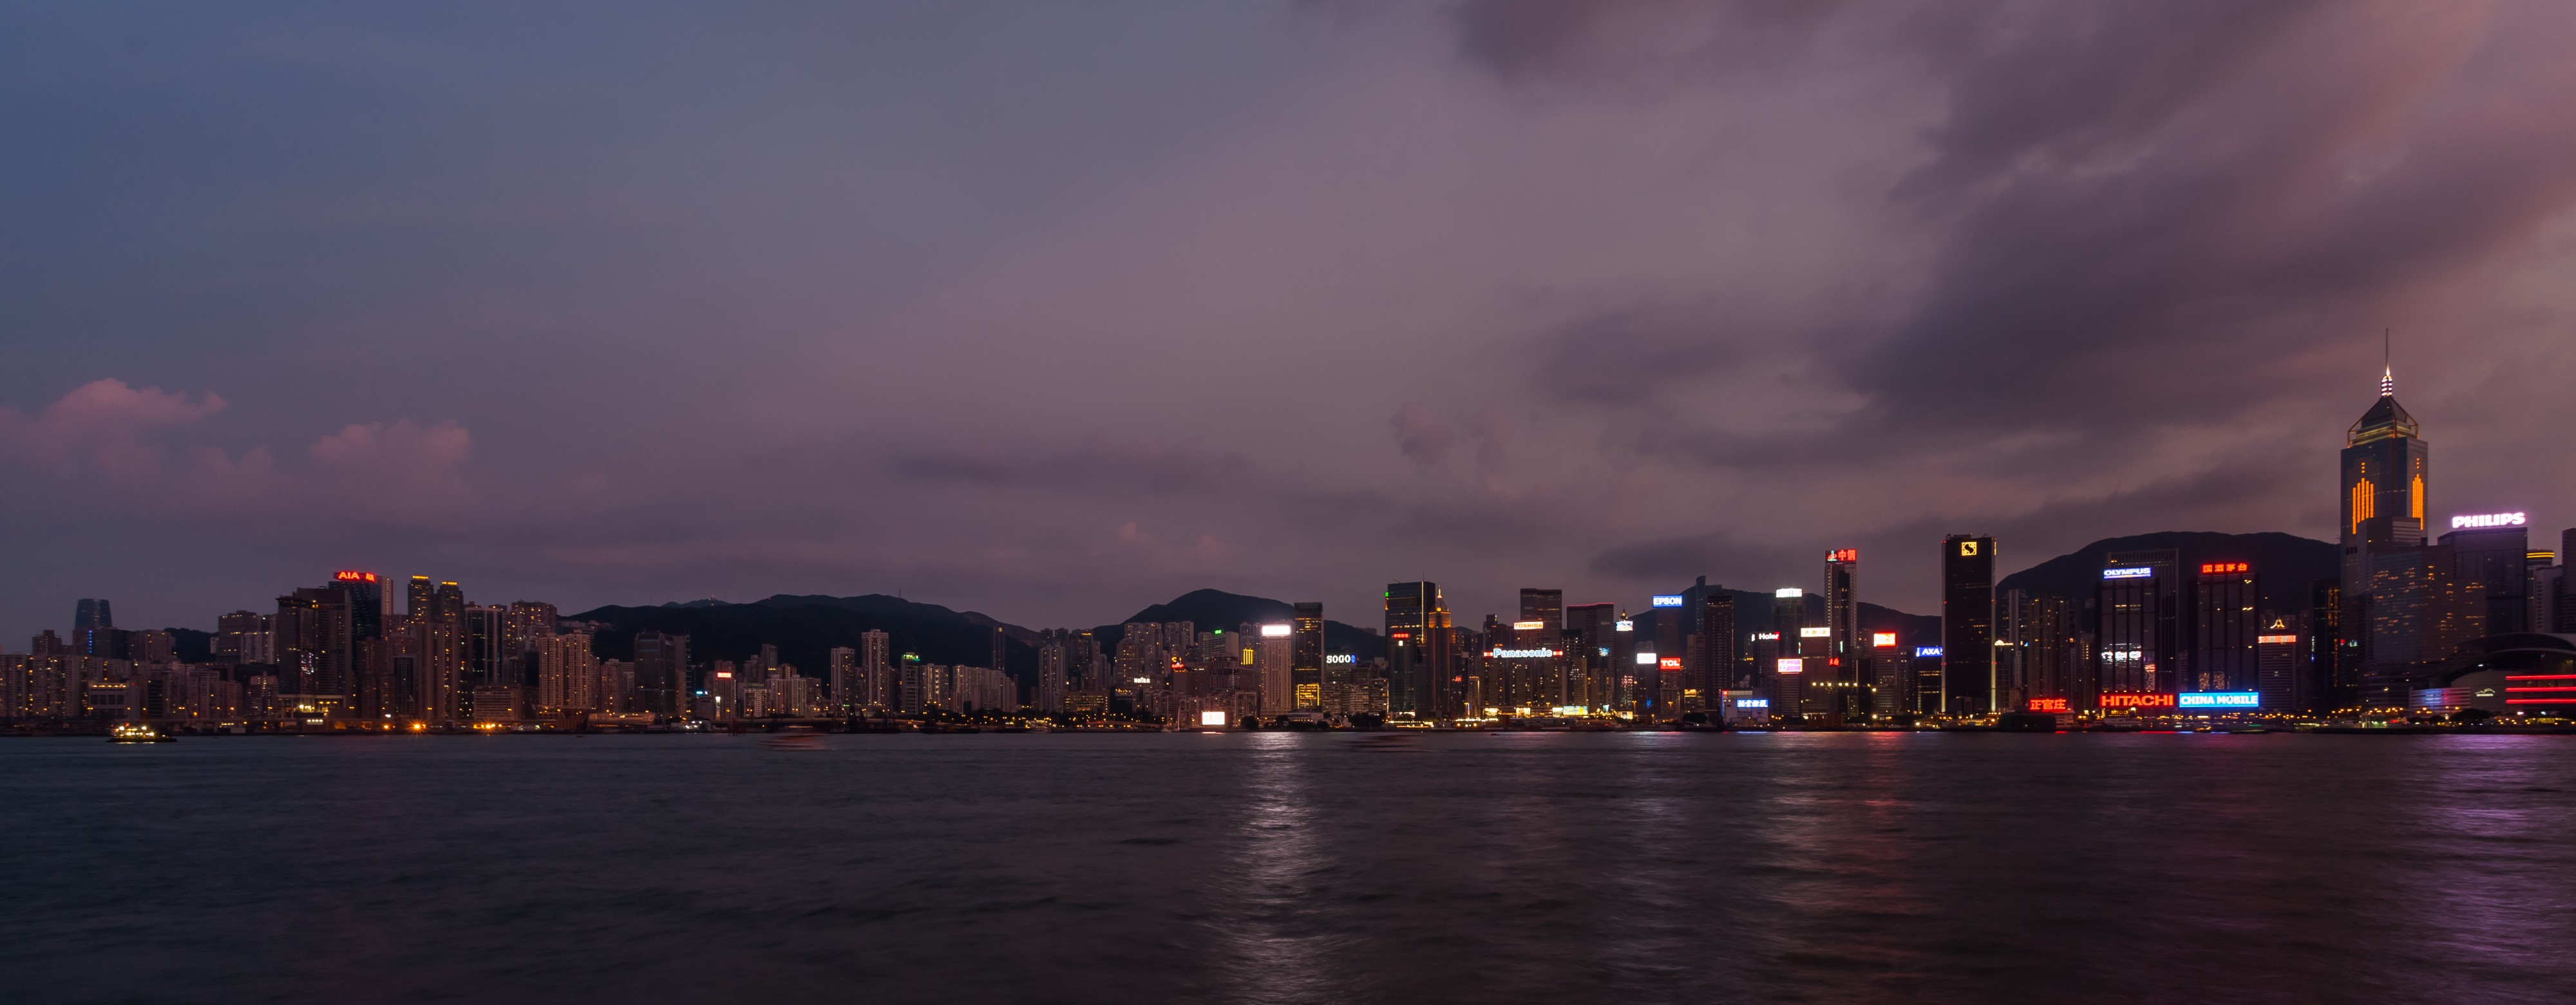 Vista del Puerto de Victoria desde Kowloon, Hong Kong, 2013-08-11, DD 06